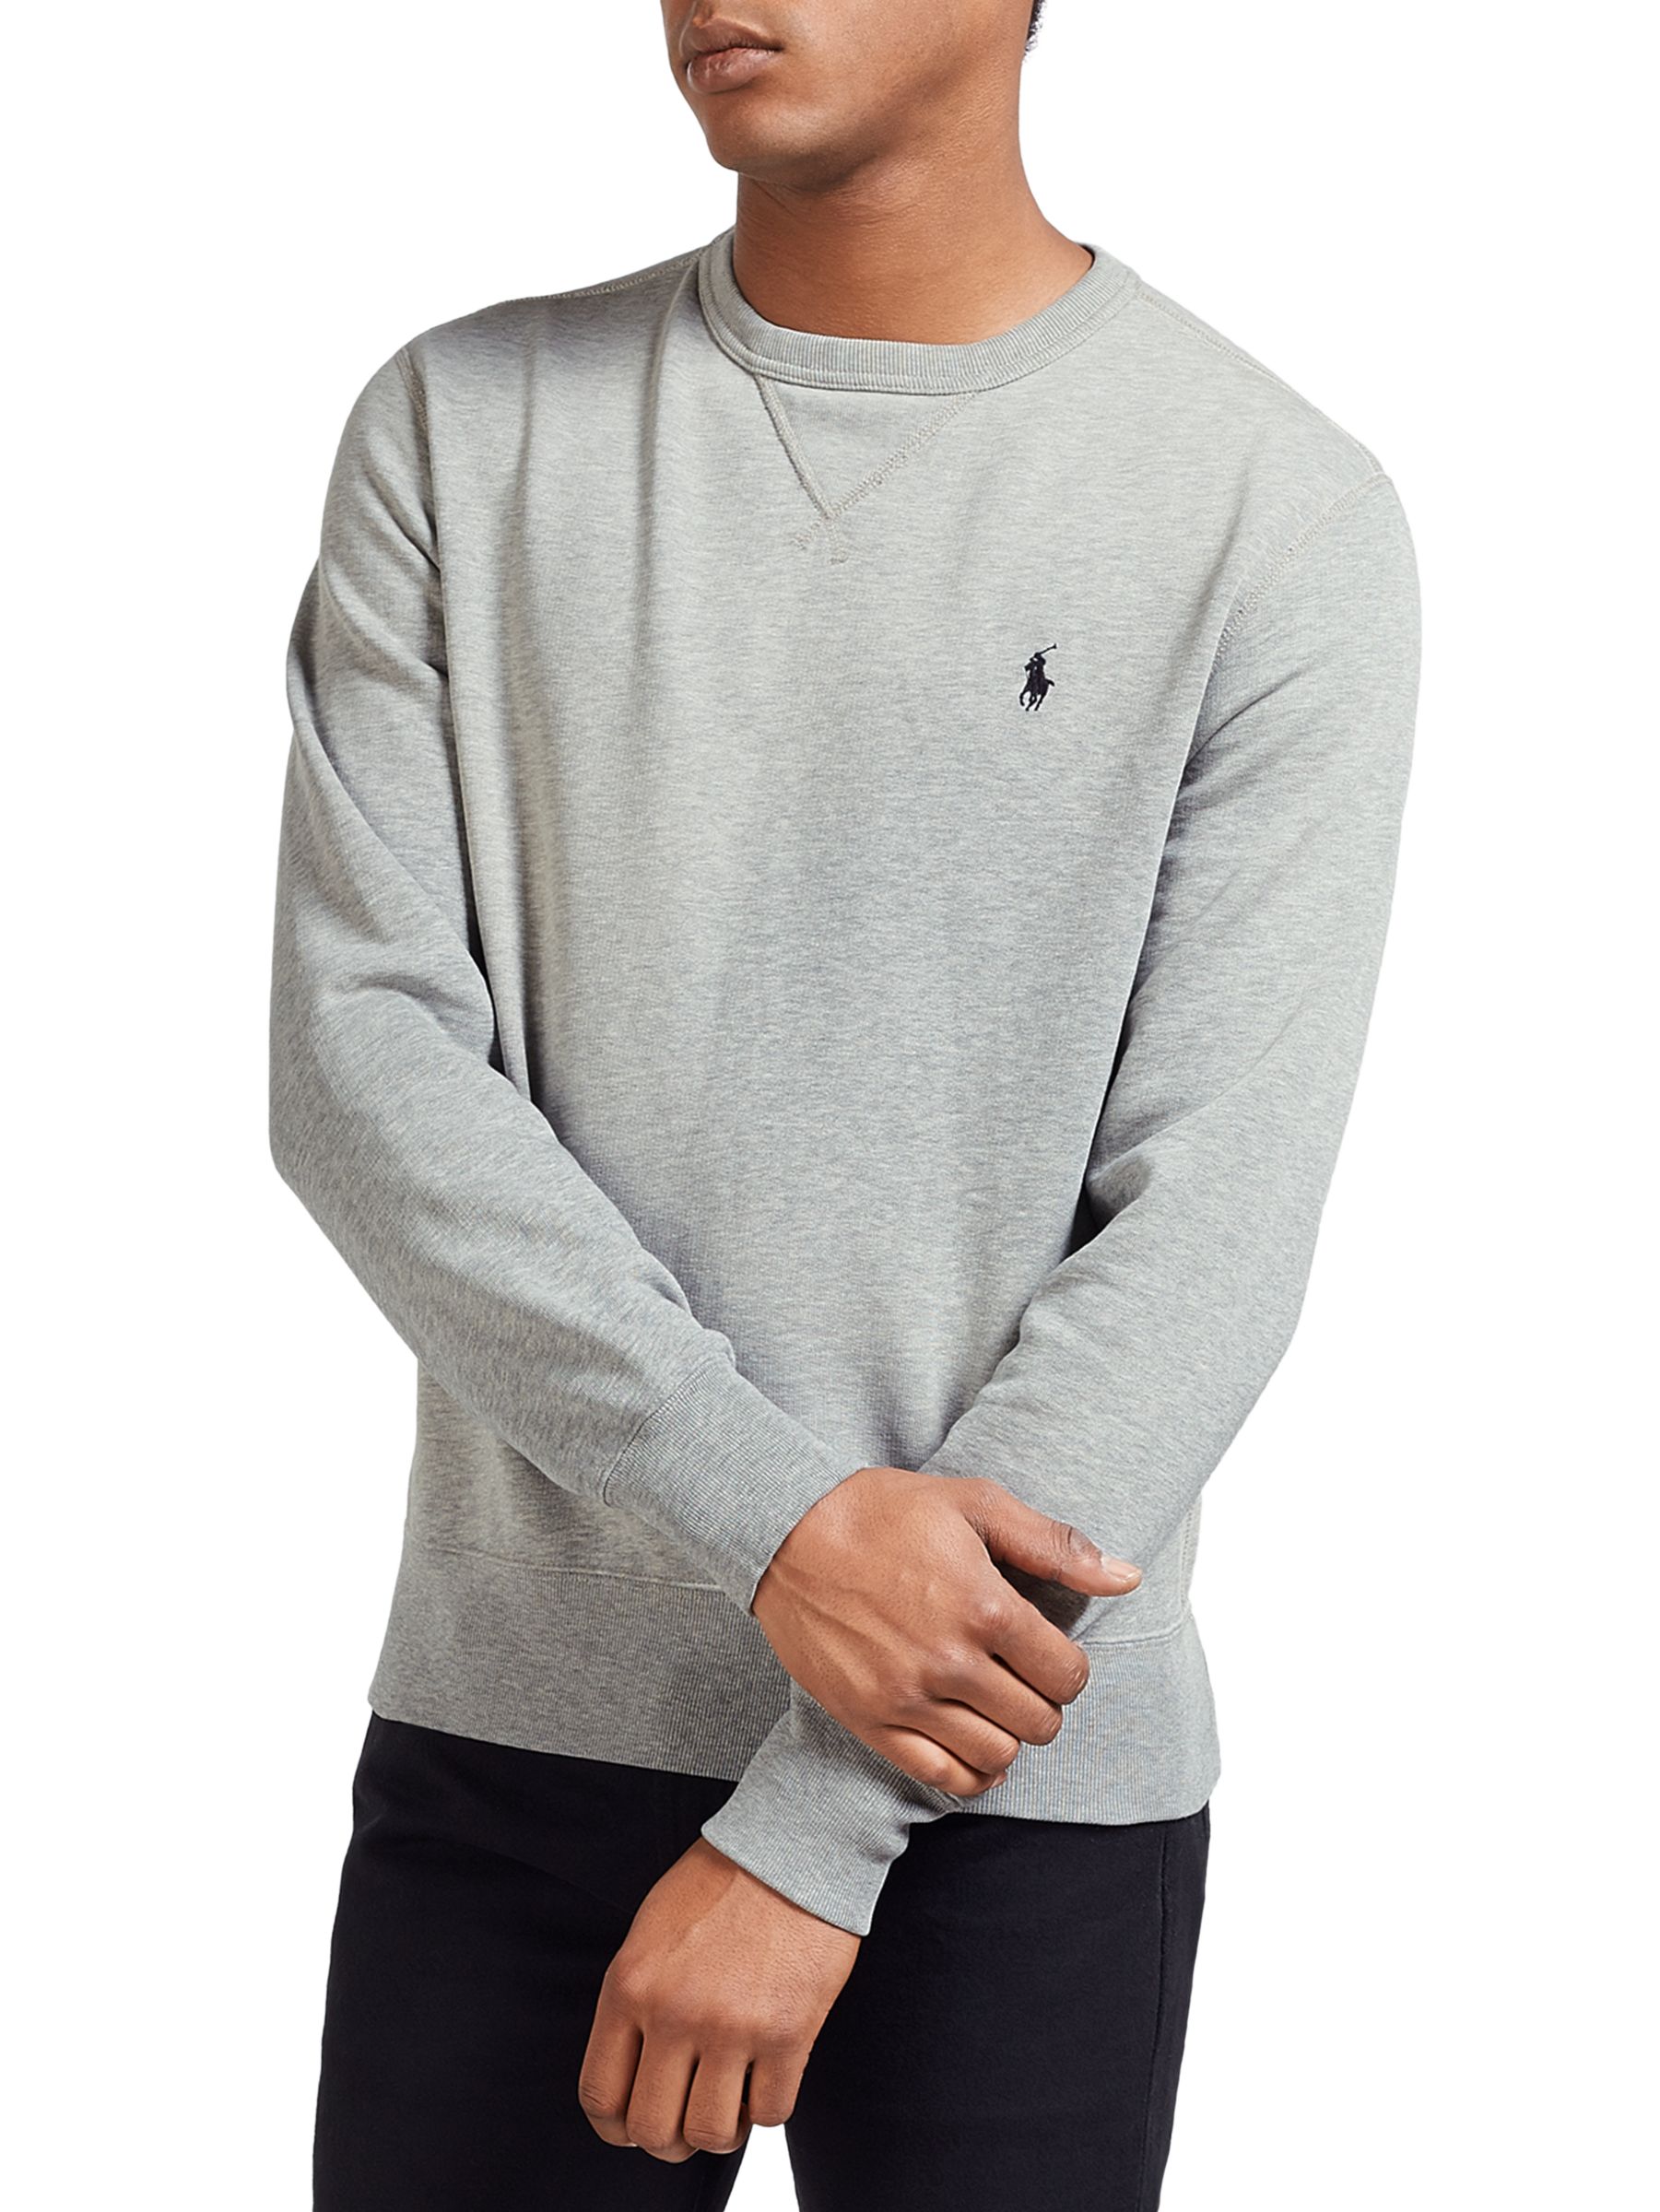 ralph lauren gray sweater